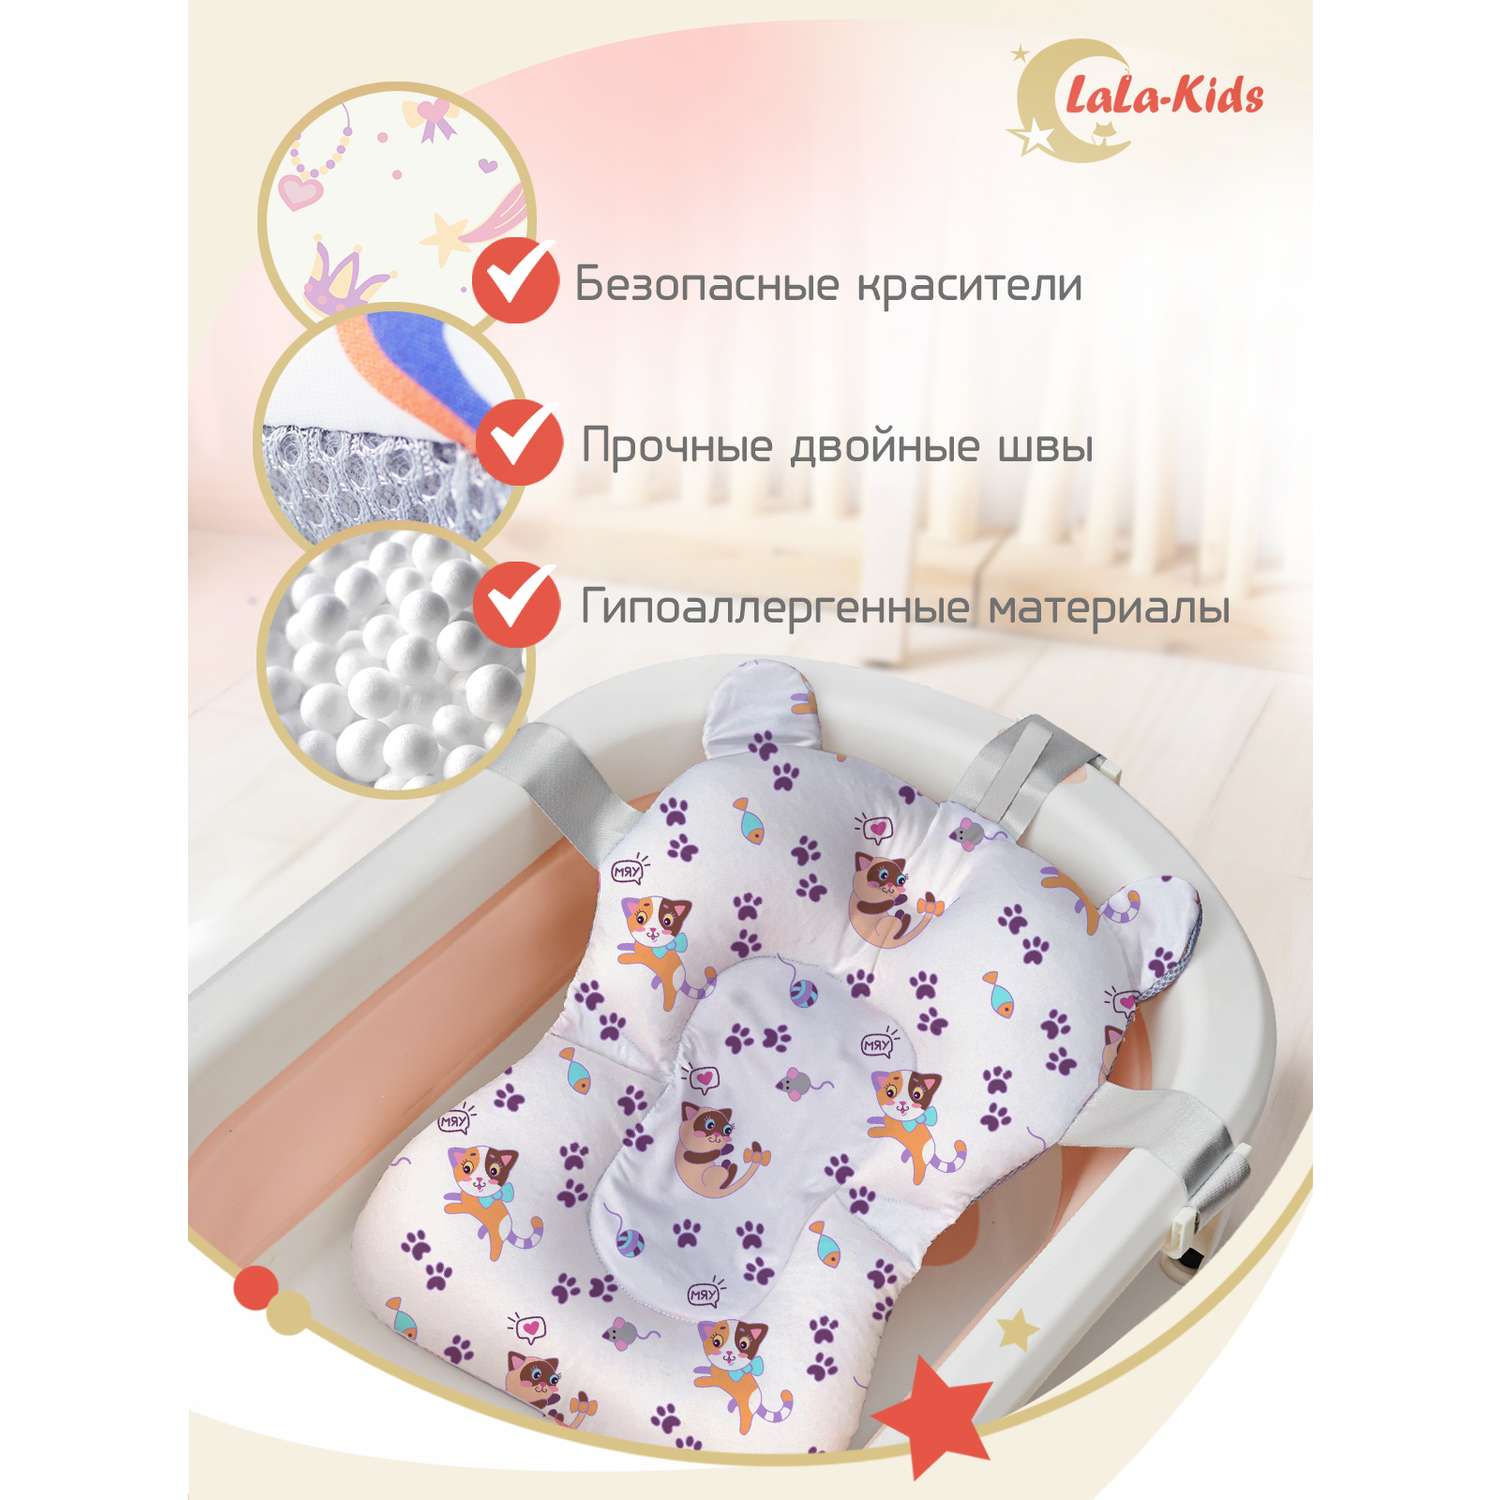 Детская ванночка с термометром LaLa-Kids складная для купания новорожденных с матрасиком в комплекте - фото 14